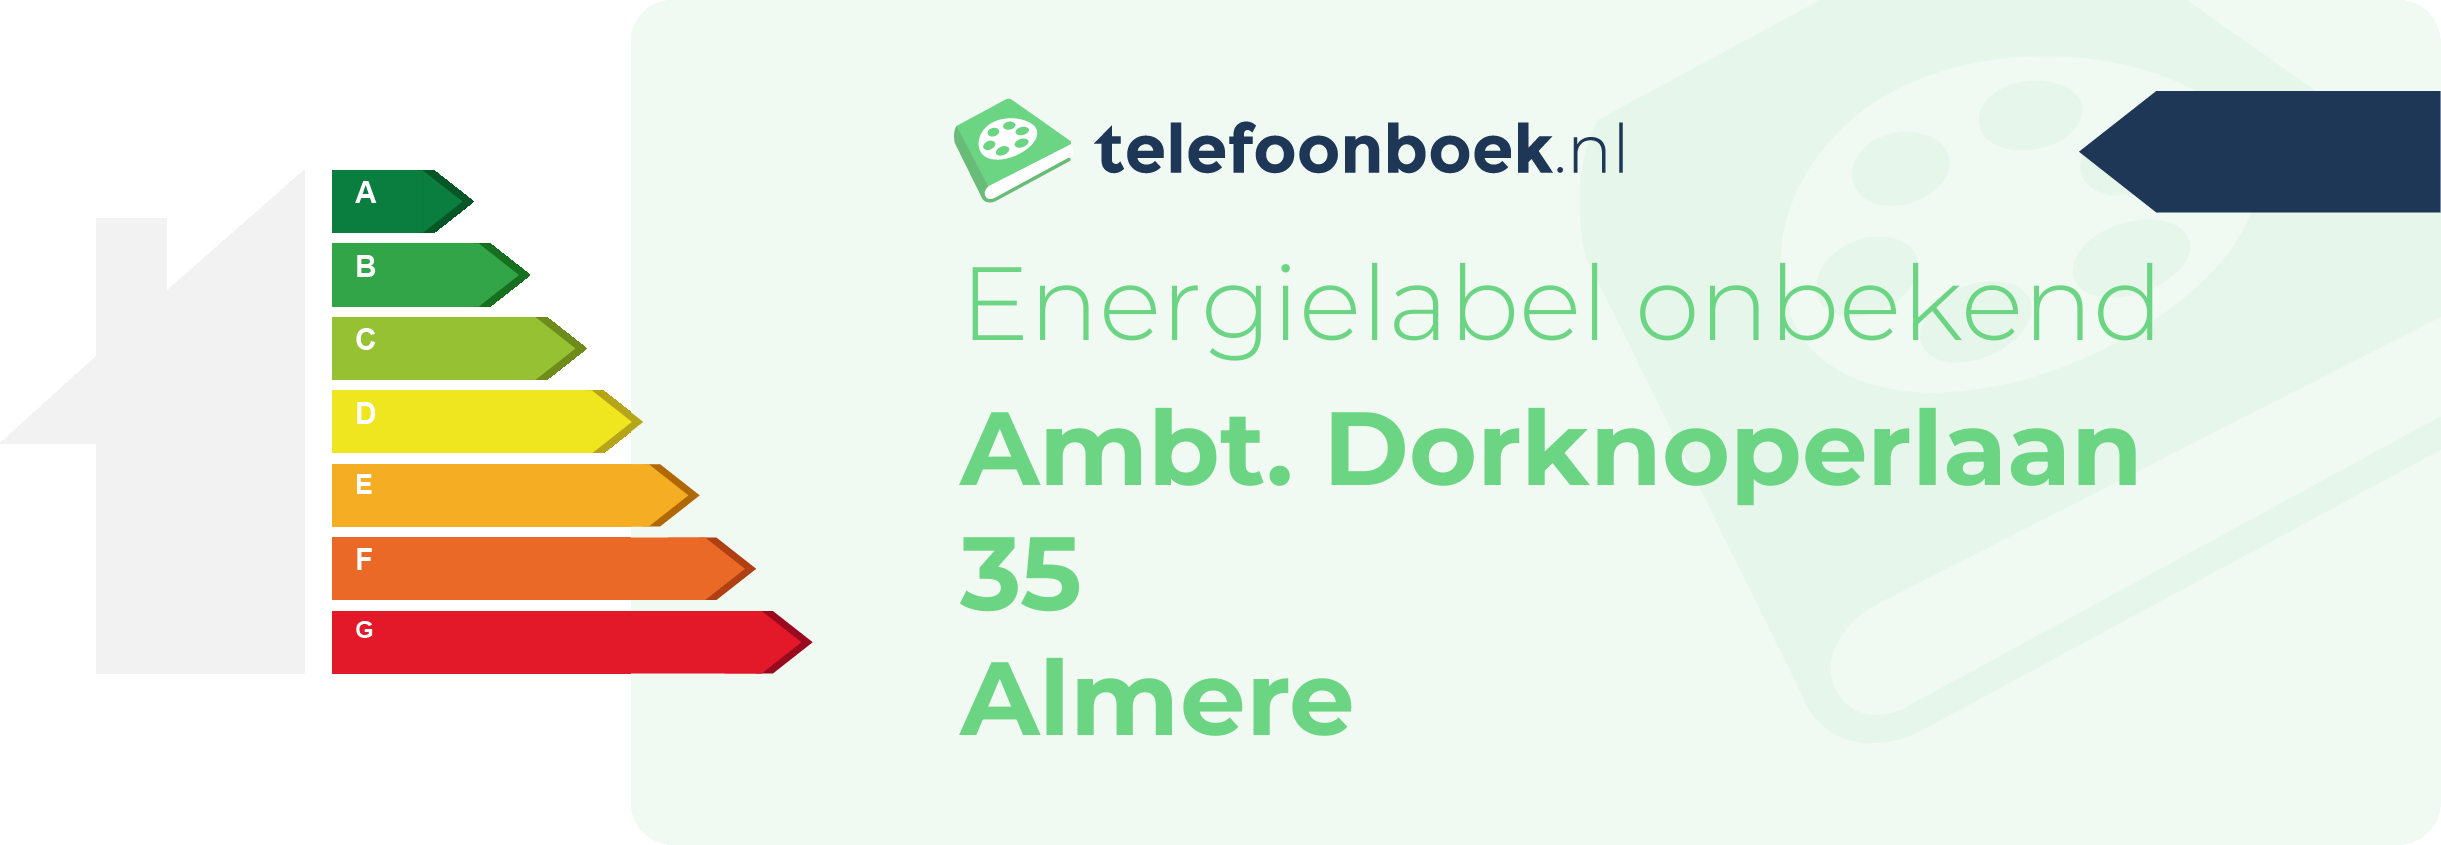 Energielabel Ambt. Dorknoperlaan 35 Almere